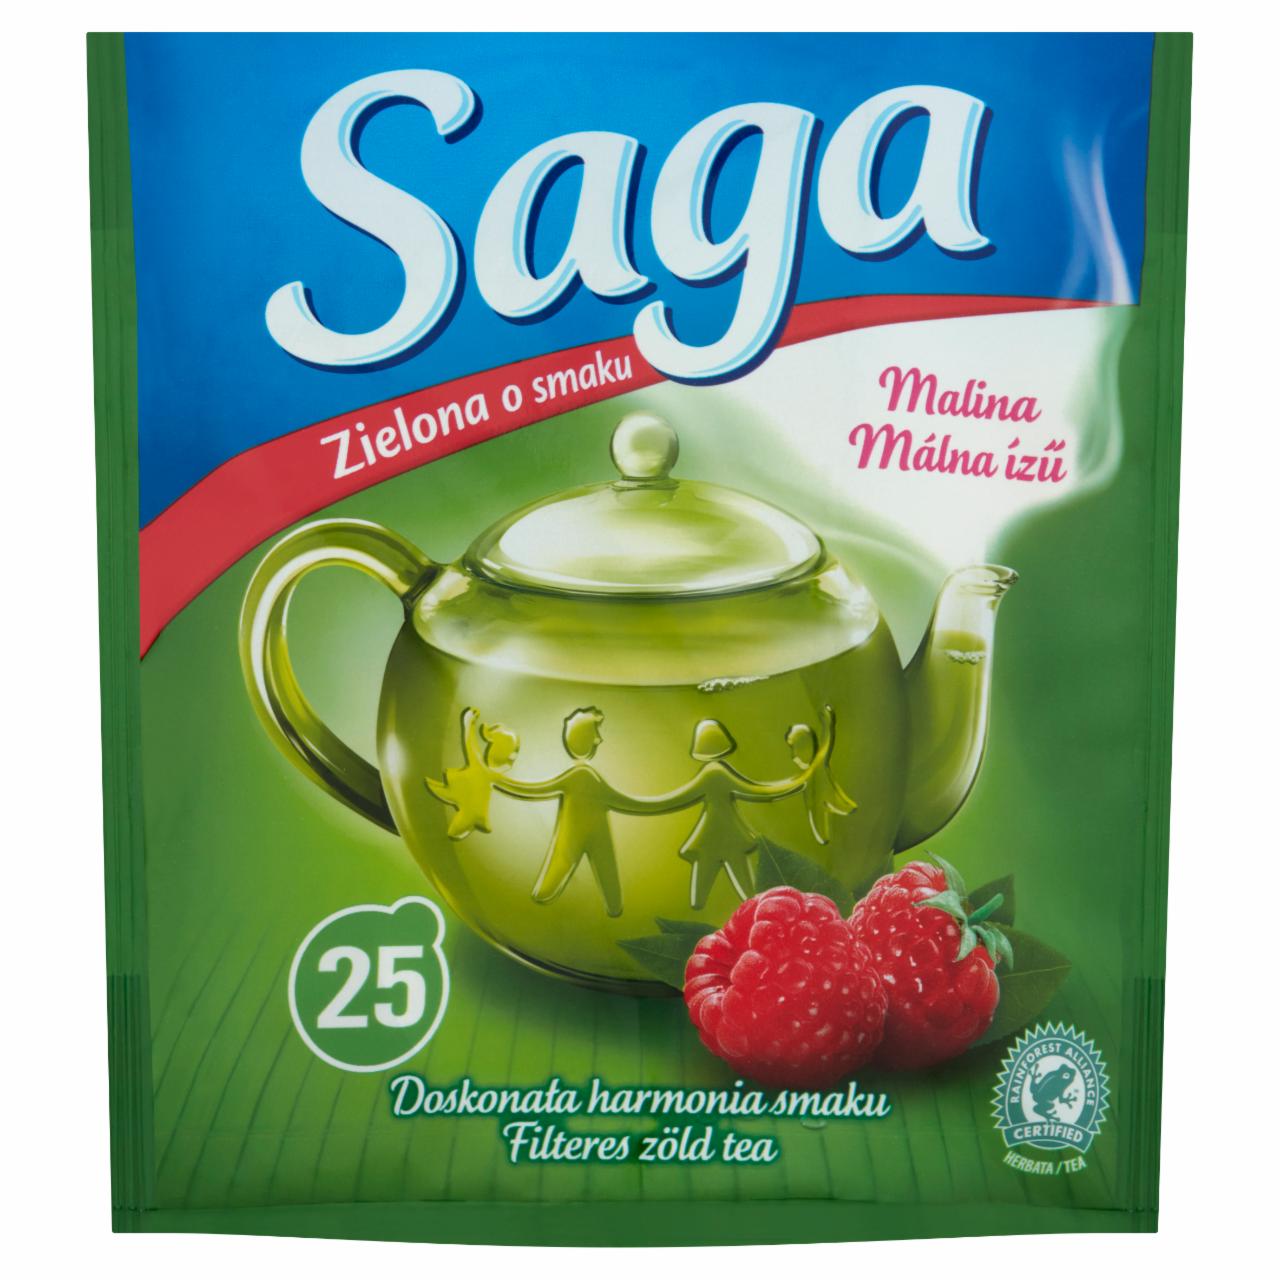 Képek - Saga málna ízű filteres zöld tea 25 filter 32,5 g